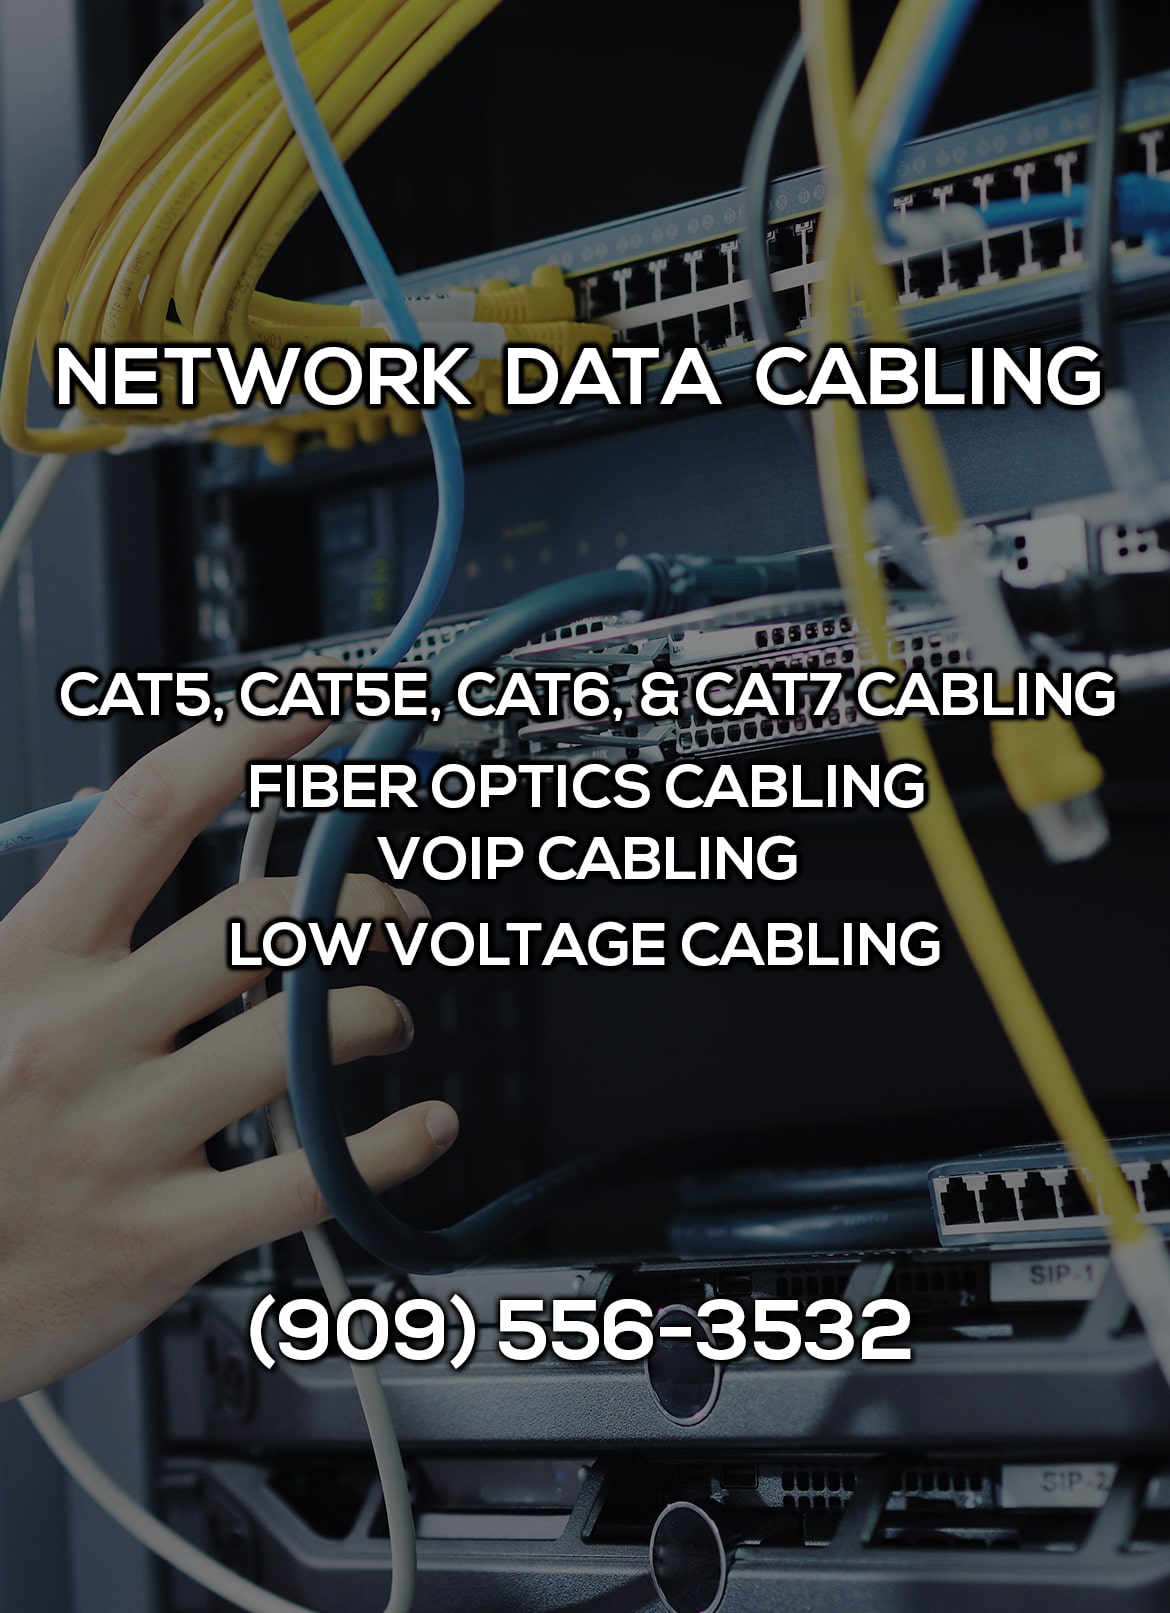 Network Data Cabling in Big Bear Lake CA